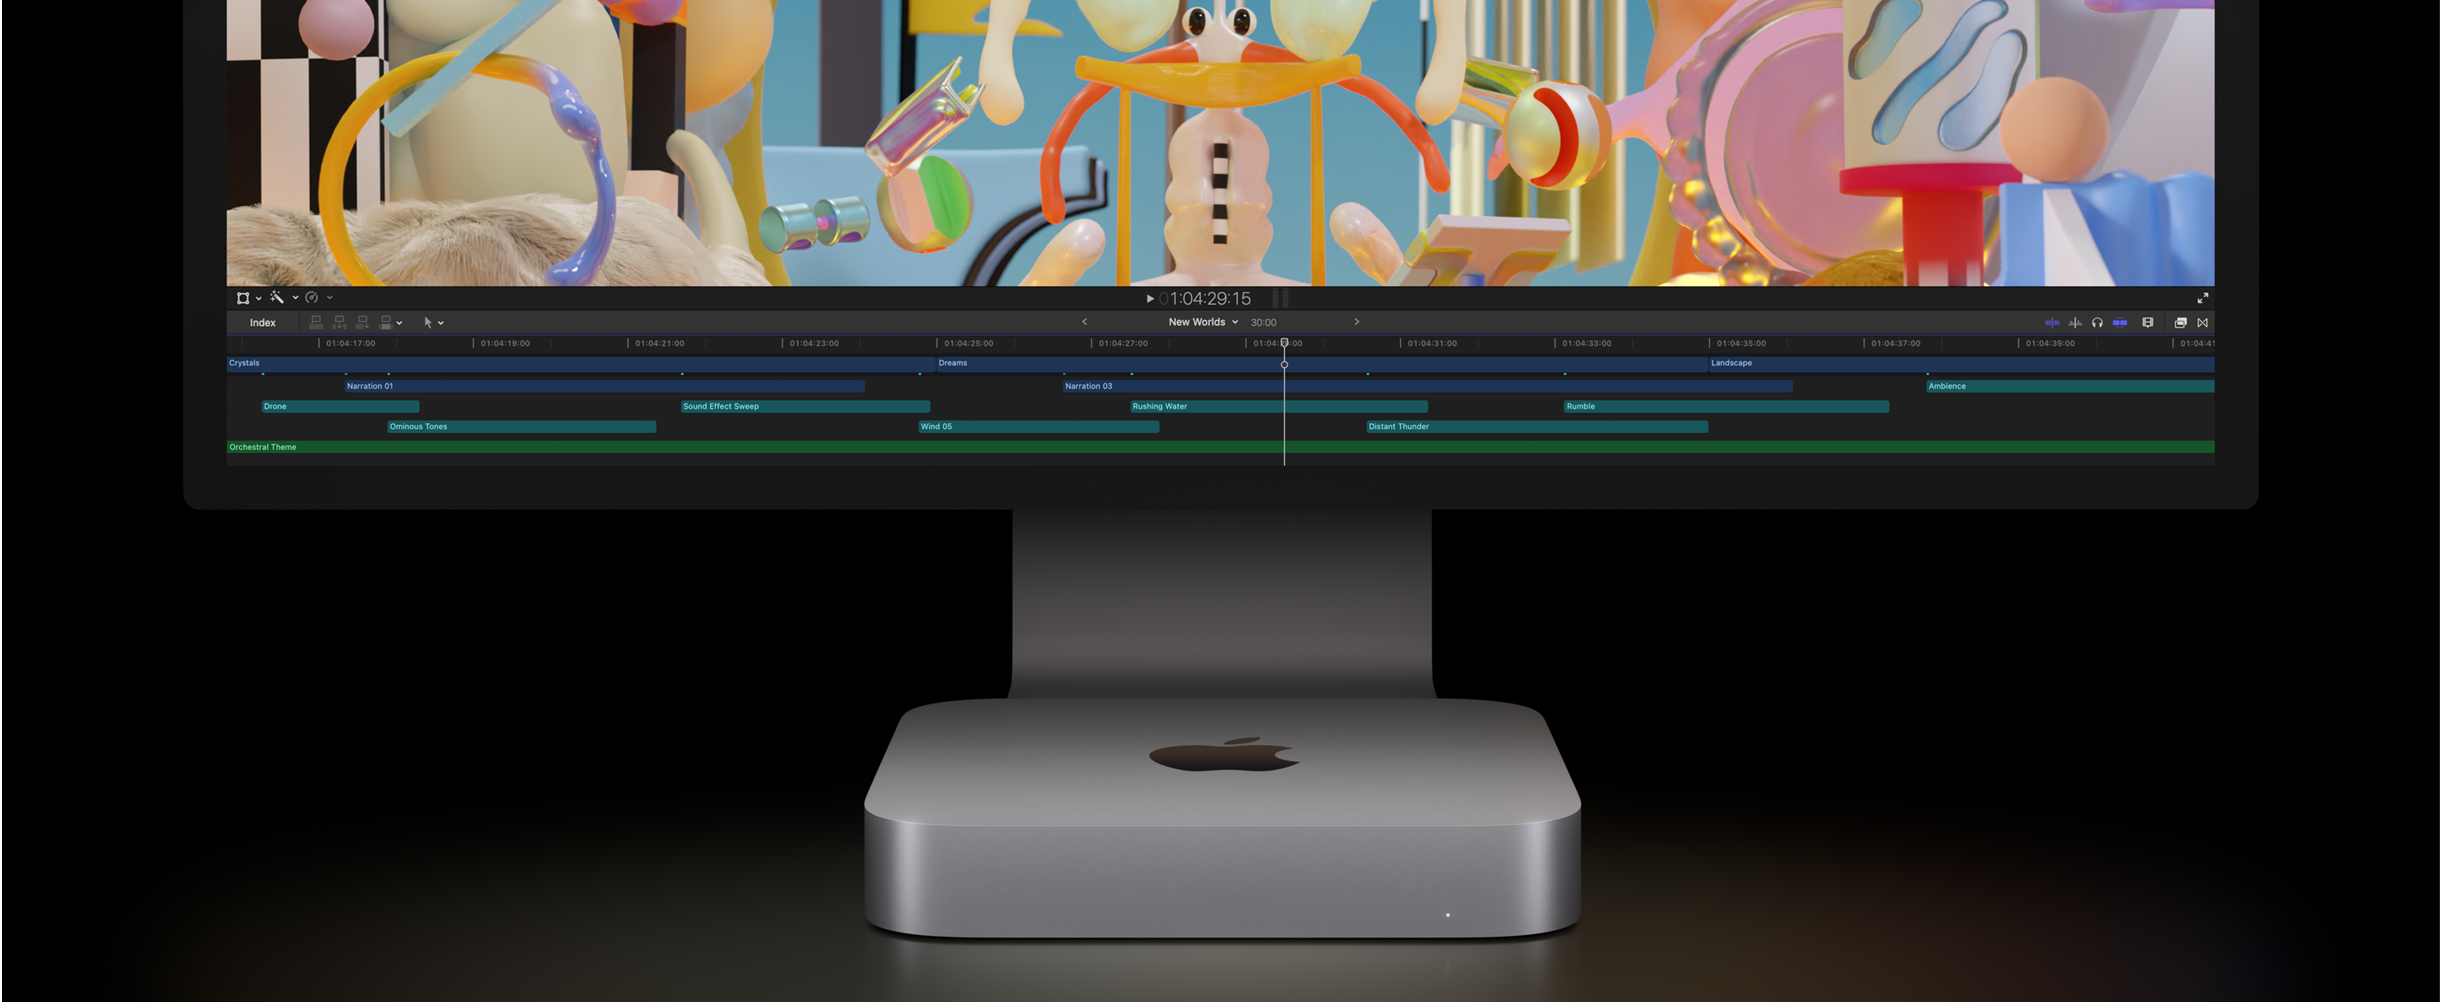 มุมมองด้านหน้าของ Mac mini และ Studio Display แสดงโปรเจ็กต์ตัดต่อวิดีโอใน Final Cut Pro